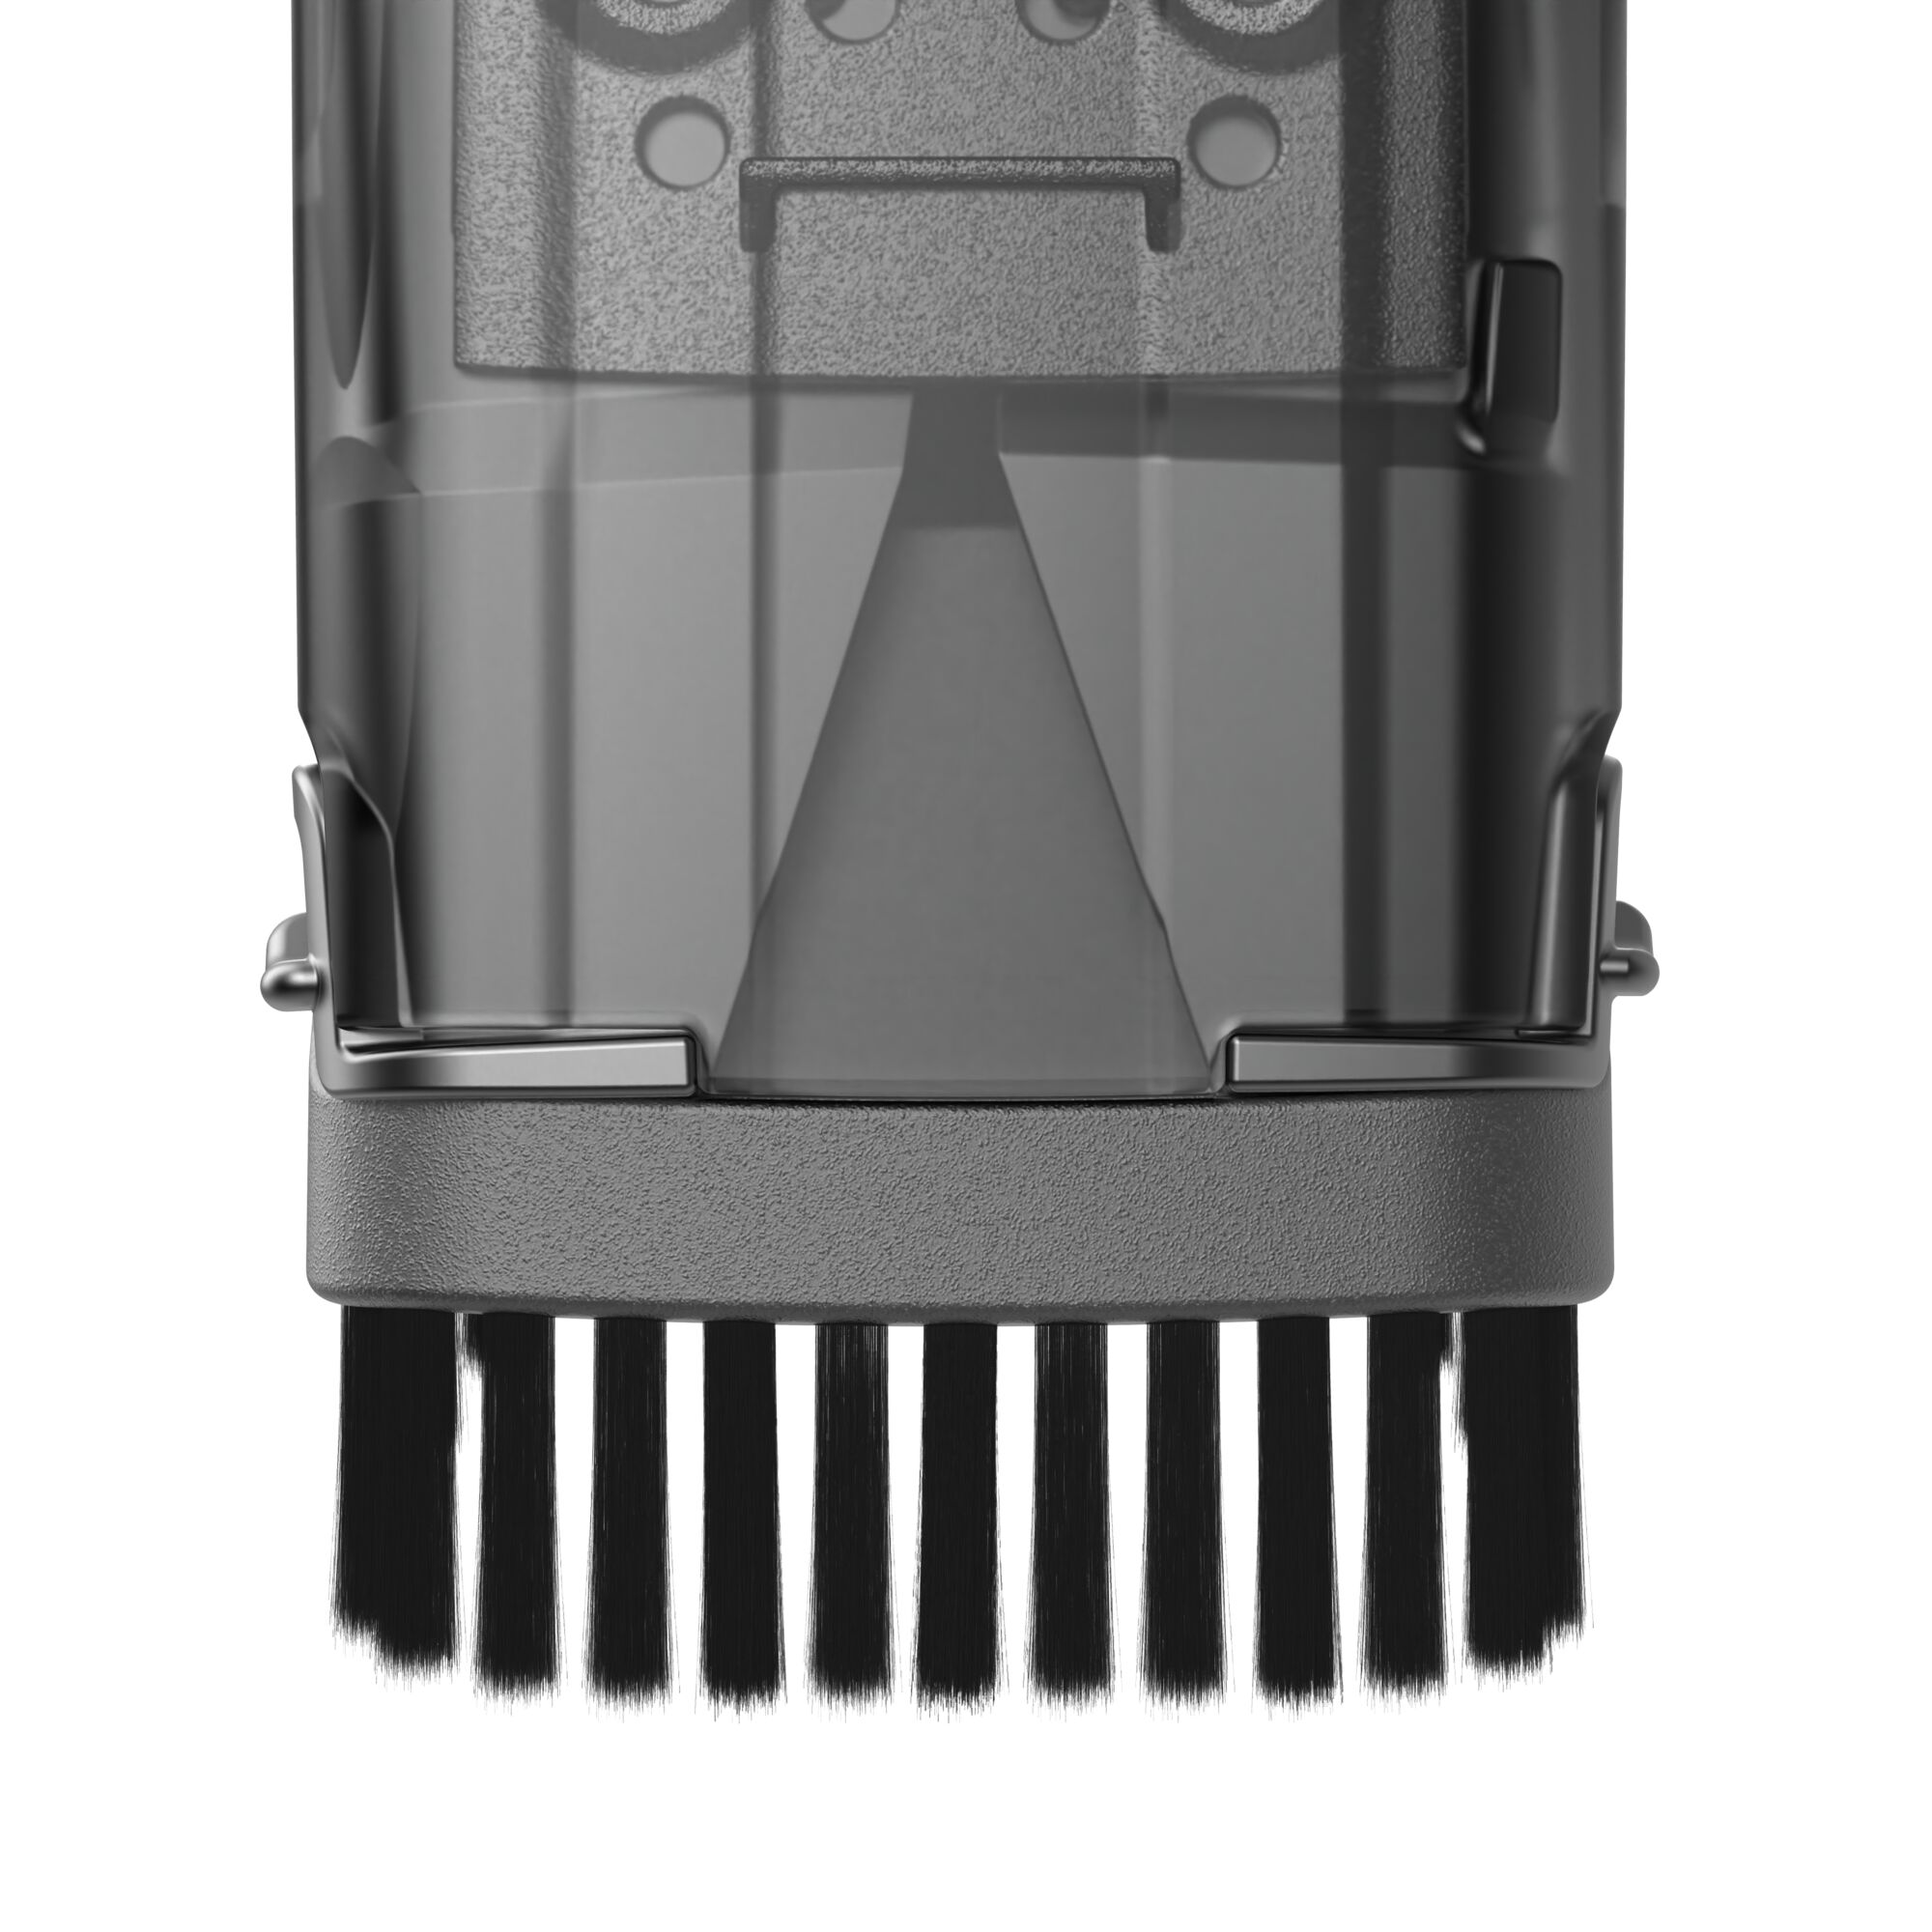 Black & Decker HLVC320B01 12V Max Dustbuster AdvancedClean Cordless Slim Handheld Vacuum - Black